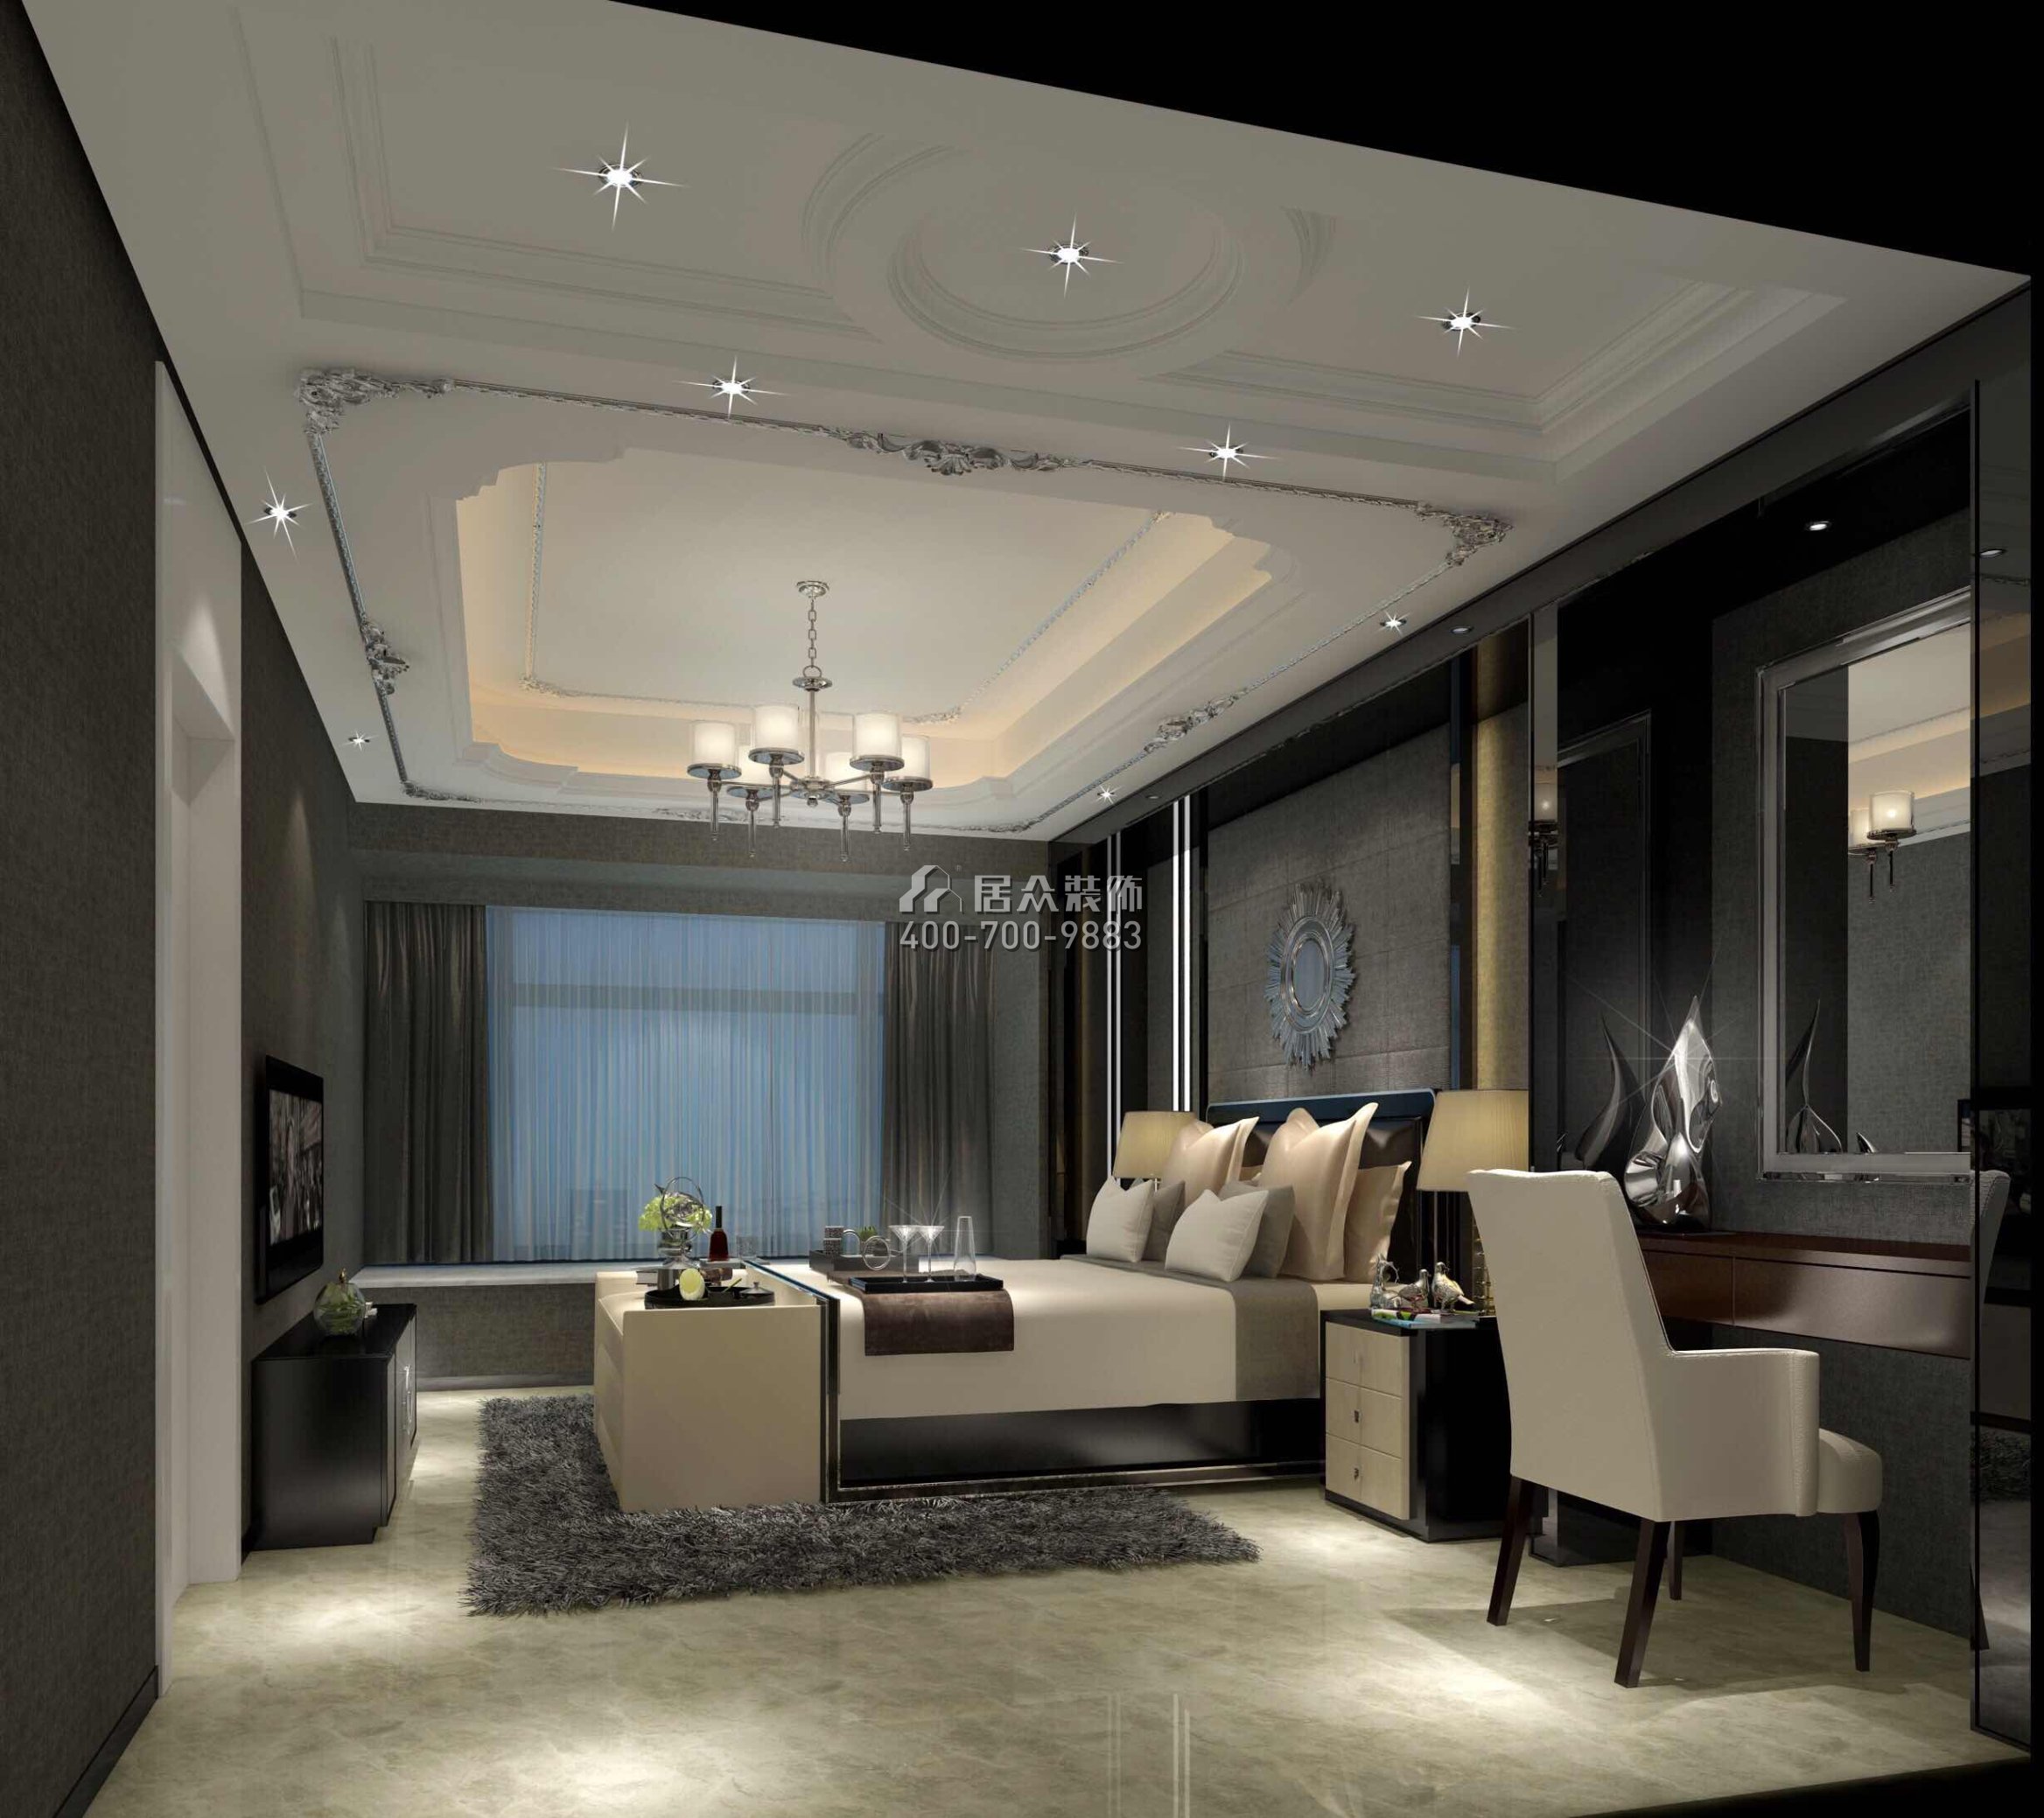 華潤城一期200平方米混搭風格平層戶型臥室裝修效果圖